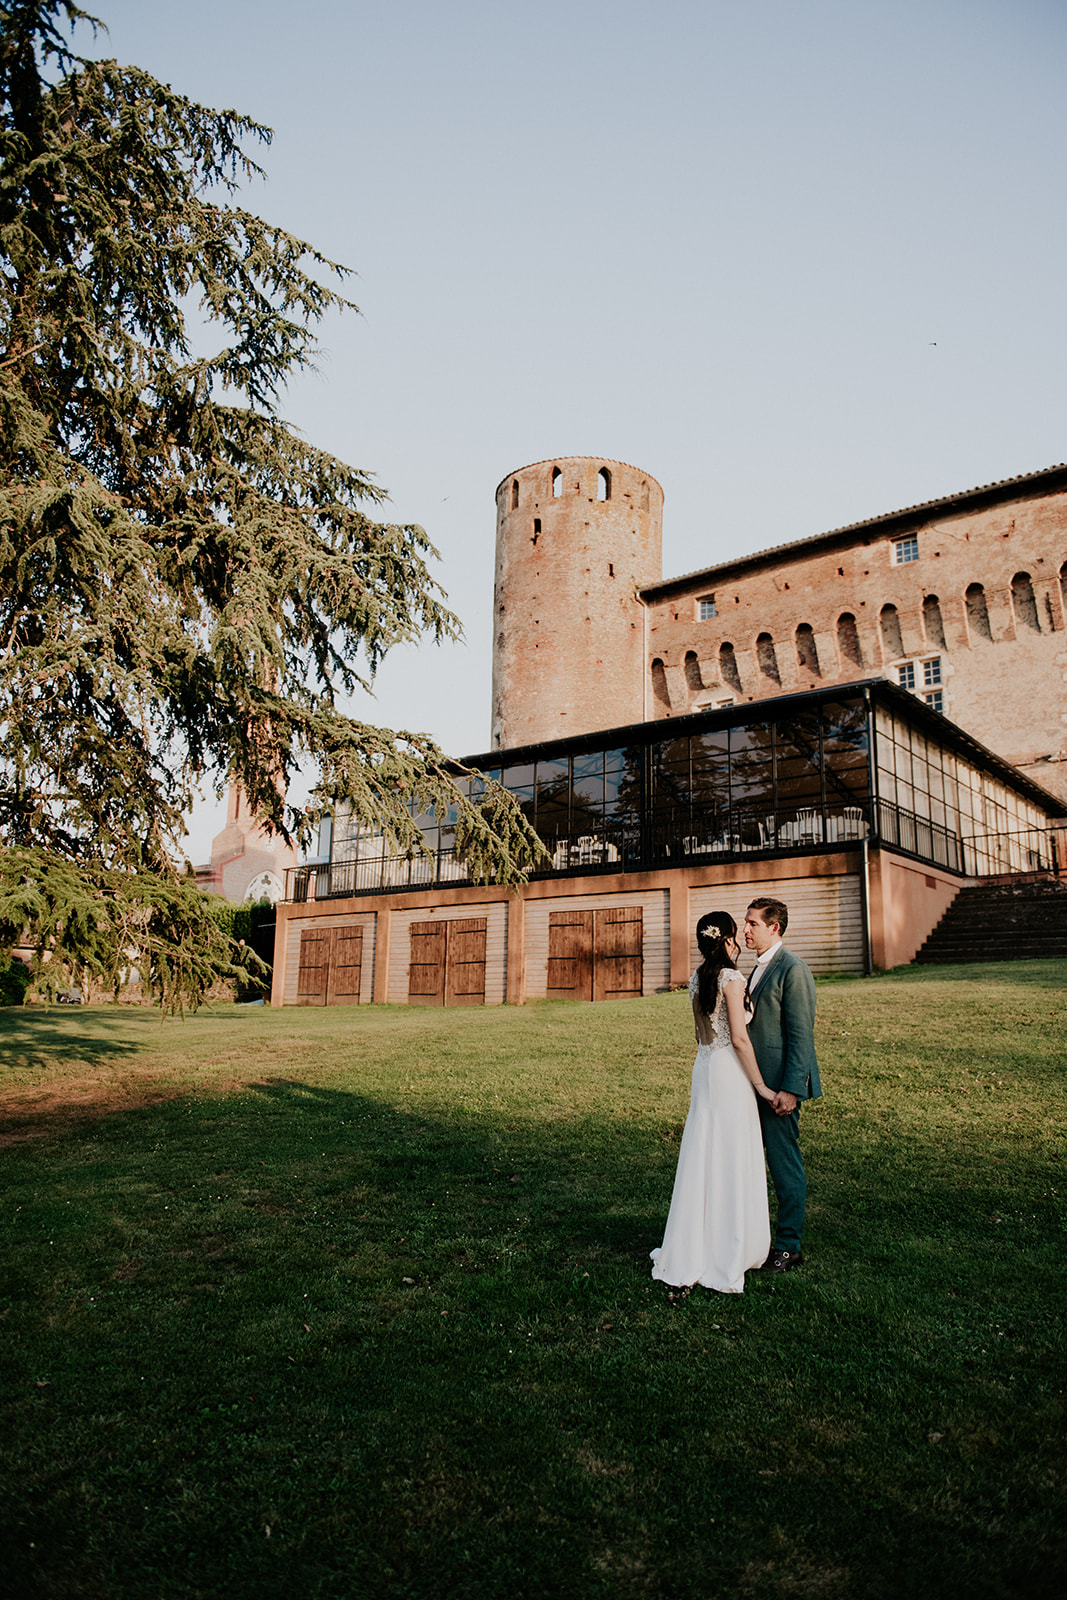 Mariage au Chateau de Launac - Photographe Thibaut Deligey